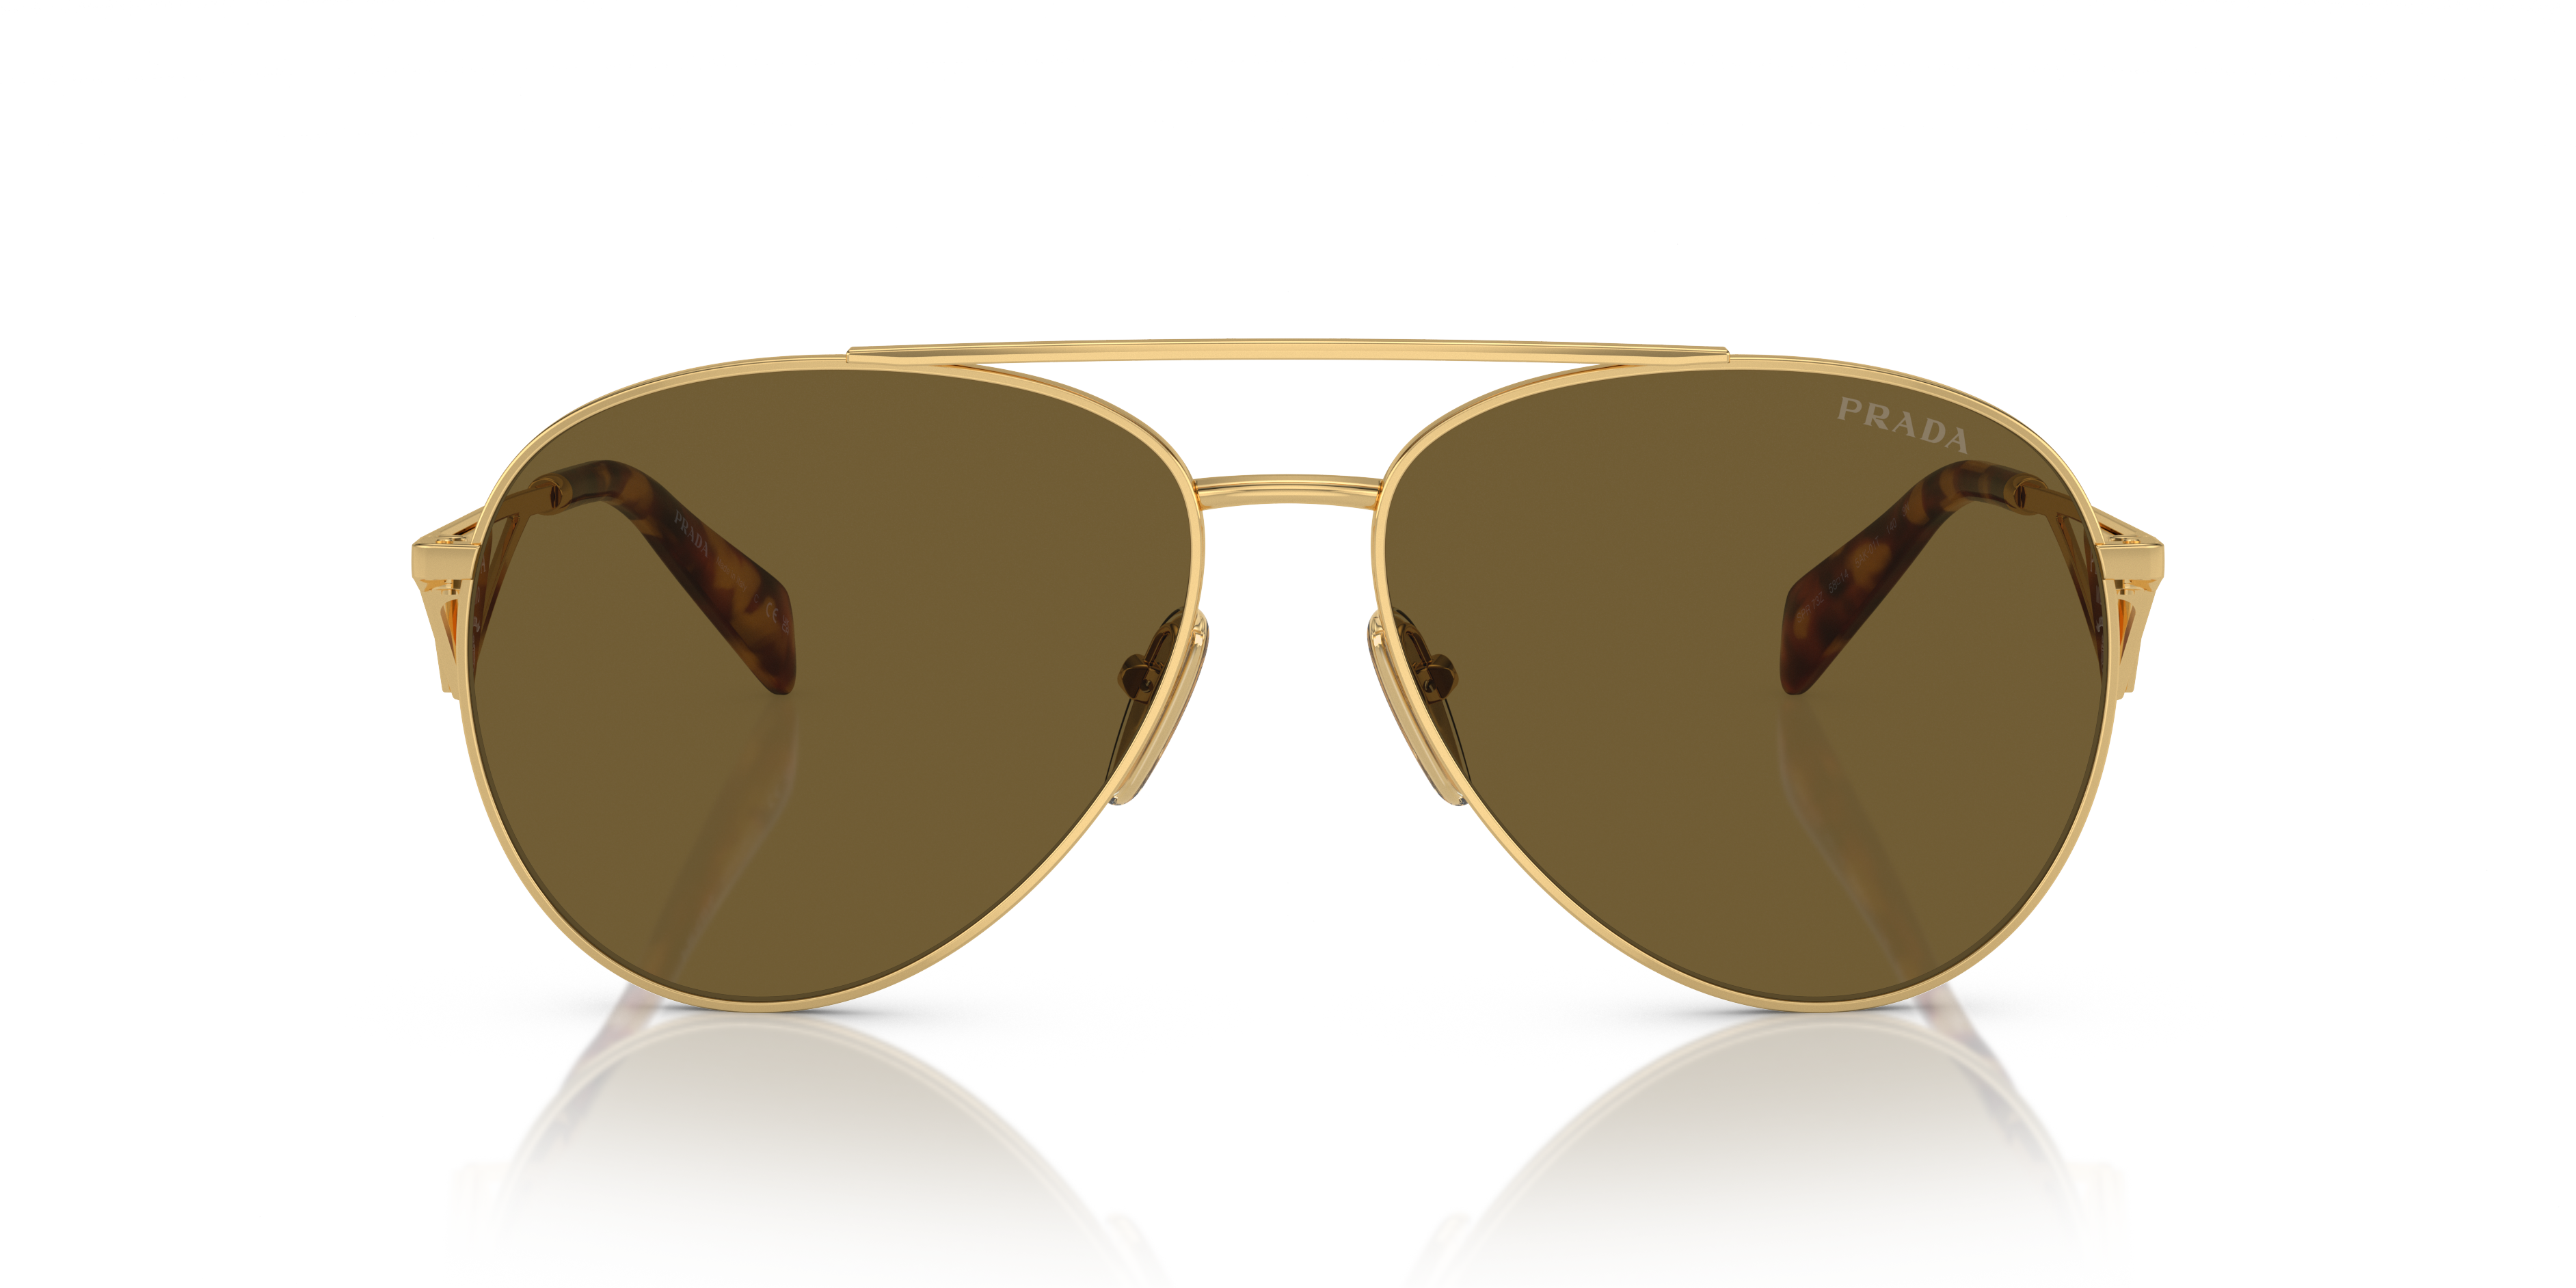 Buy MINI COOPER Gradient Aviator Men's Sunglasses - (M32026-002P 59 S |59|  Blue Color Lens) at Amazon.in